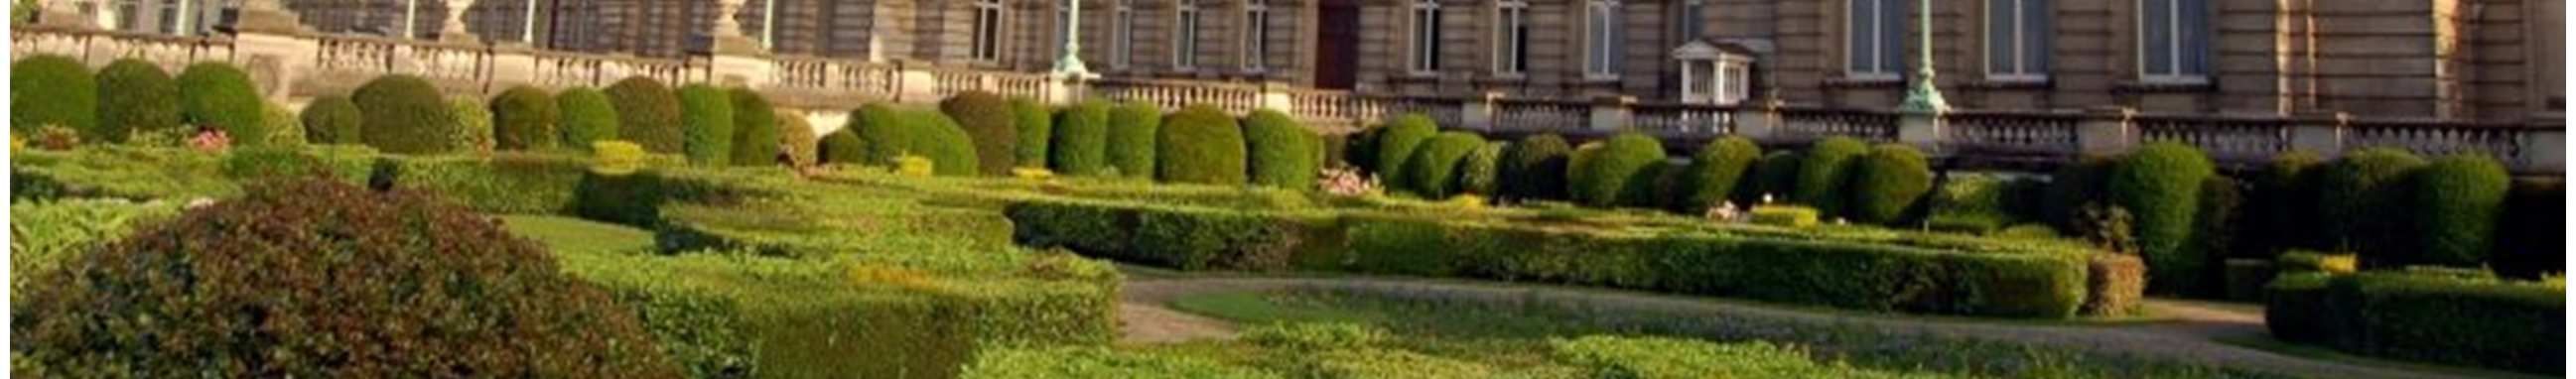 KÖNIGSPALAST Der Königspalast Brüssel (Chateau Royal) ist als Residenz der Königsfamilie nicht der Öffentlichkeit